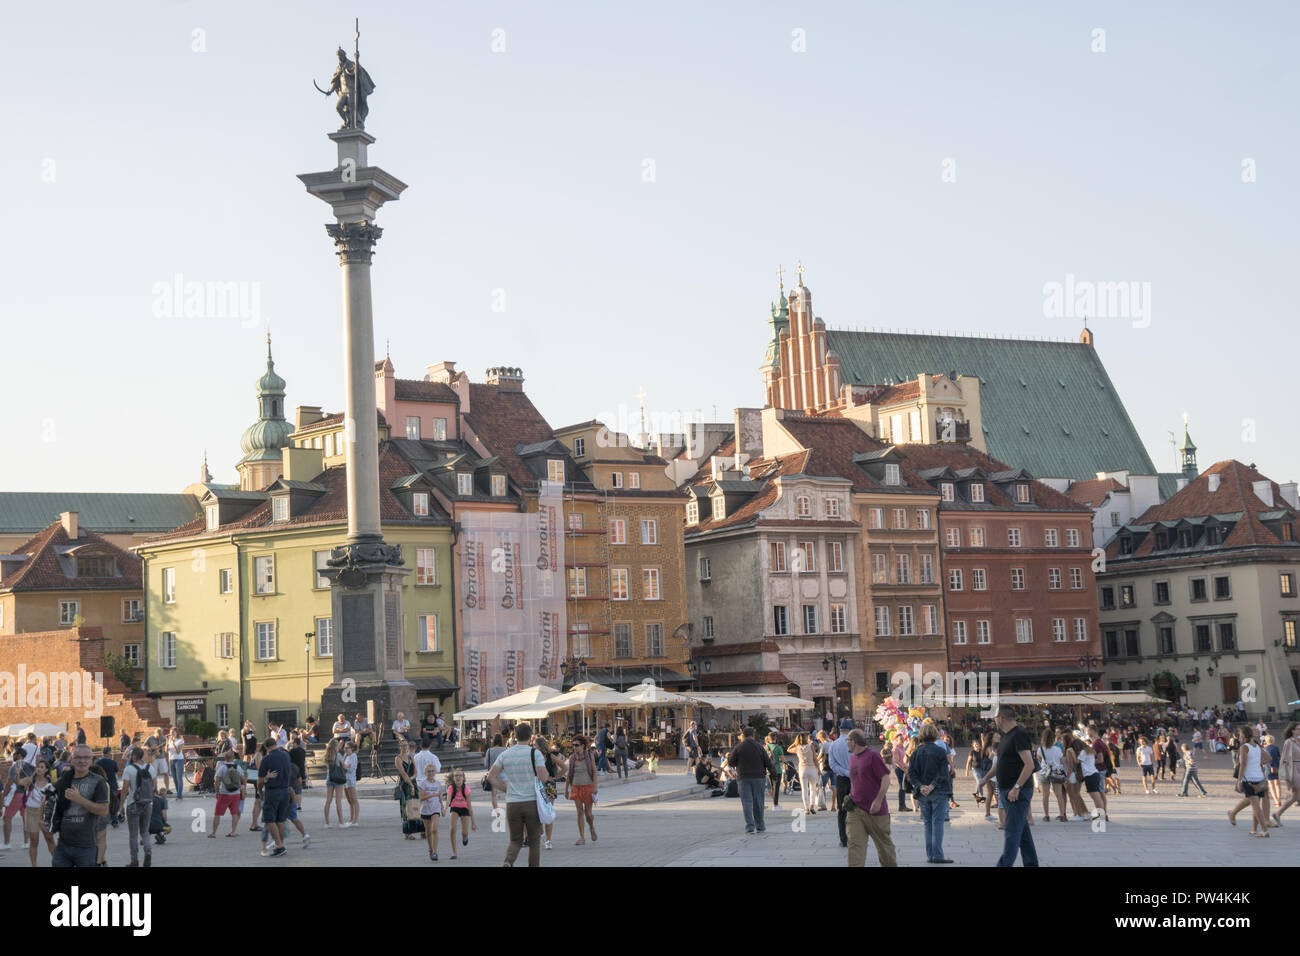 La Vieille Ville (Stare Miasto) et place du marché de Varsovie, Pologne date de la fin du 13e siècle. Colonne Sigmund s'élève de la place. Banque D'Images